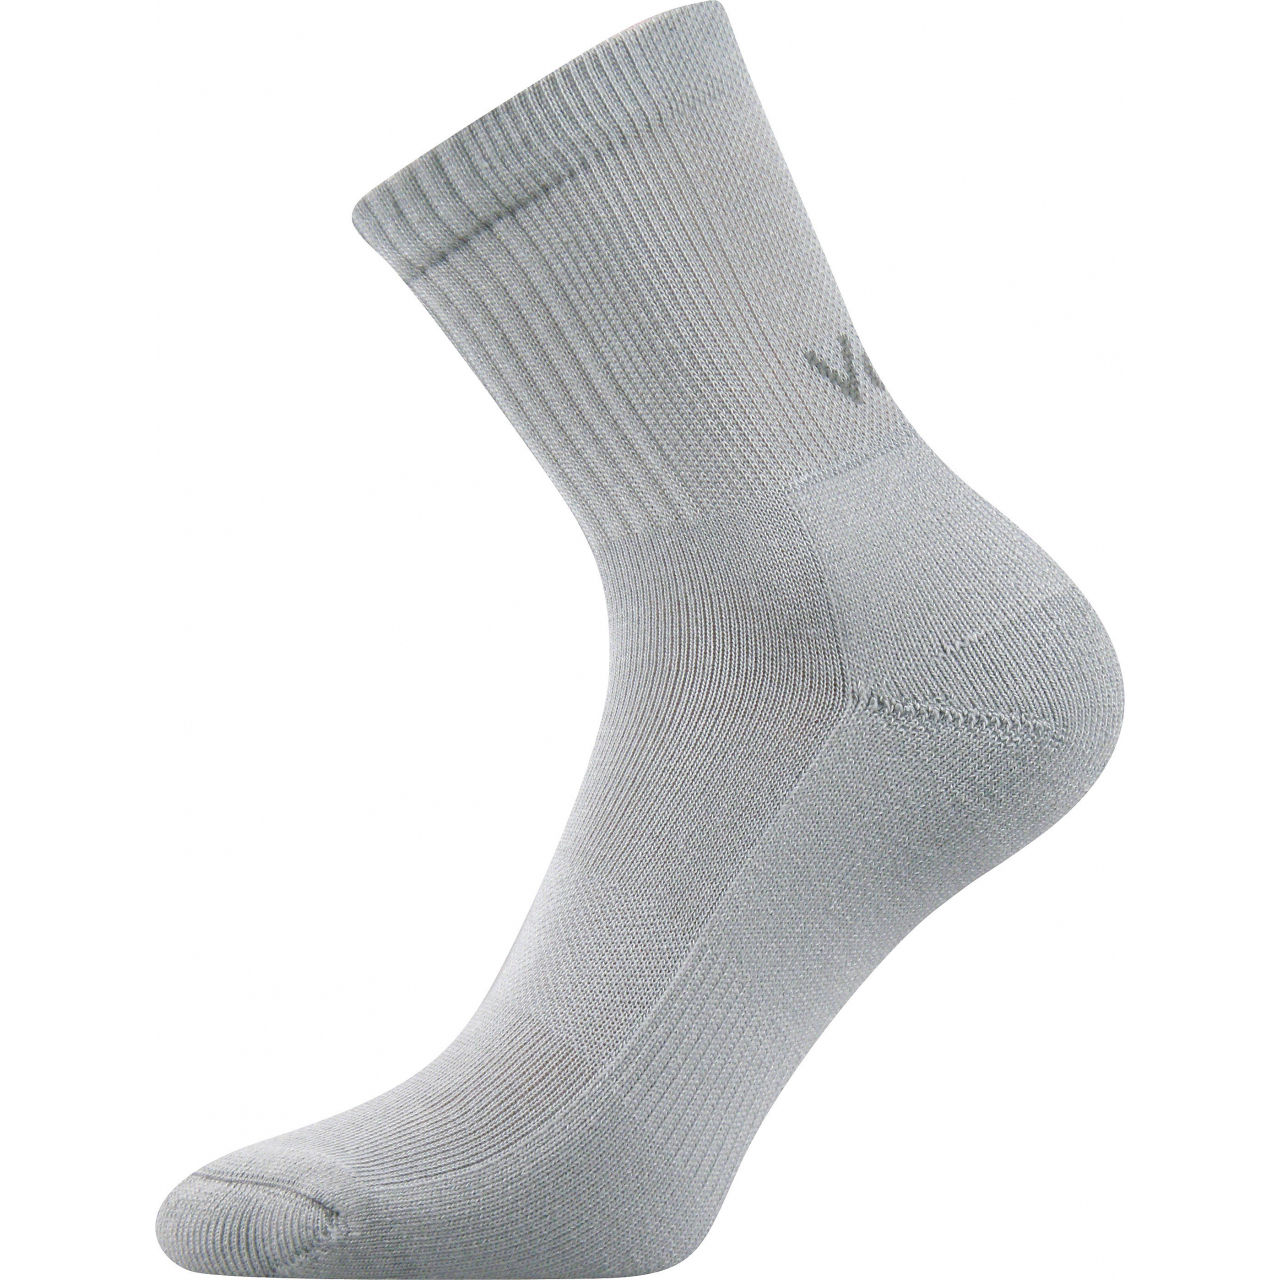 Ponožky sportovní unisex Voxx Mystic - světle šedé, 43-46